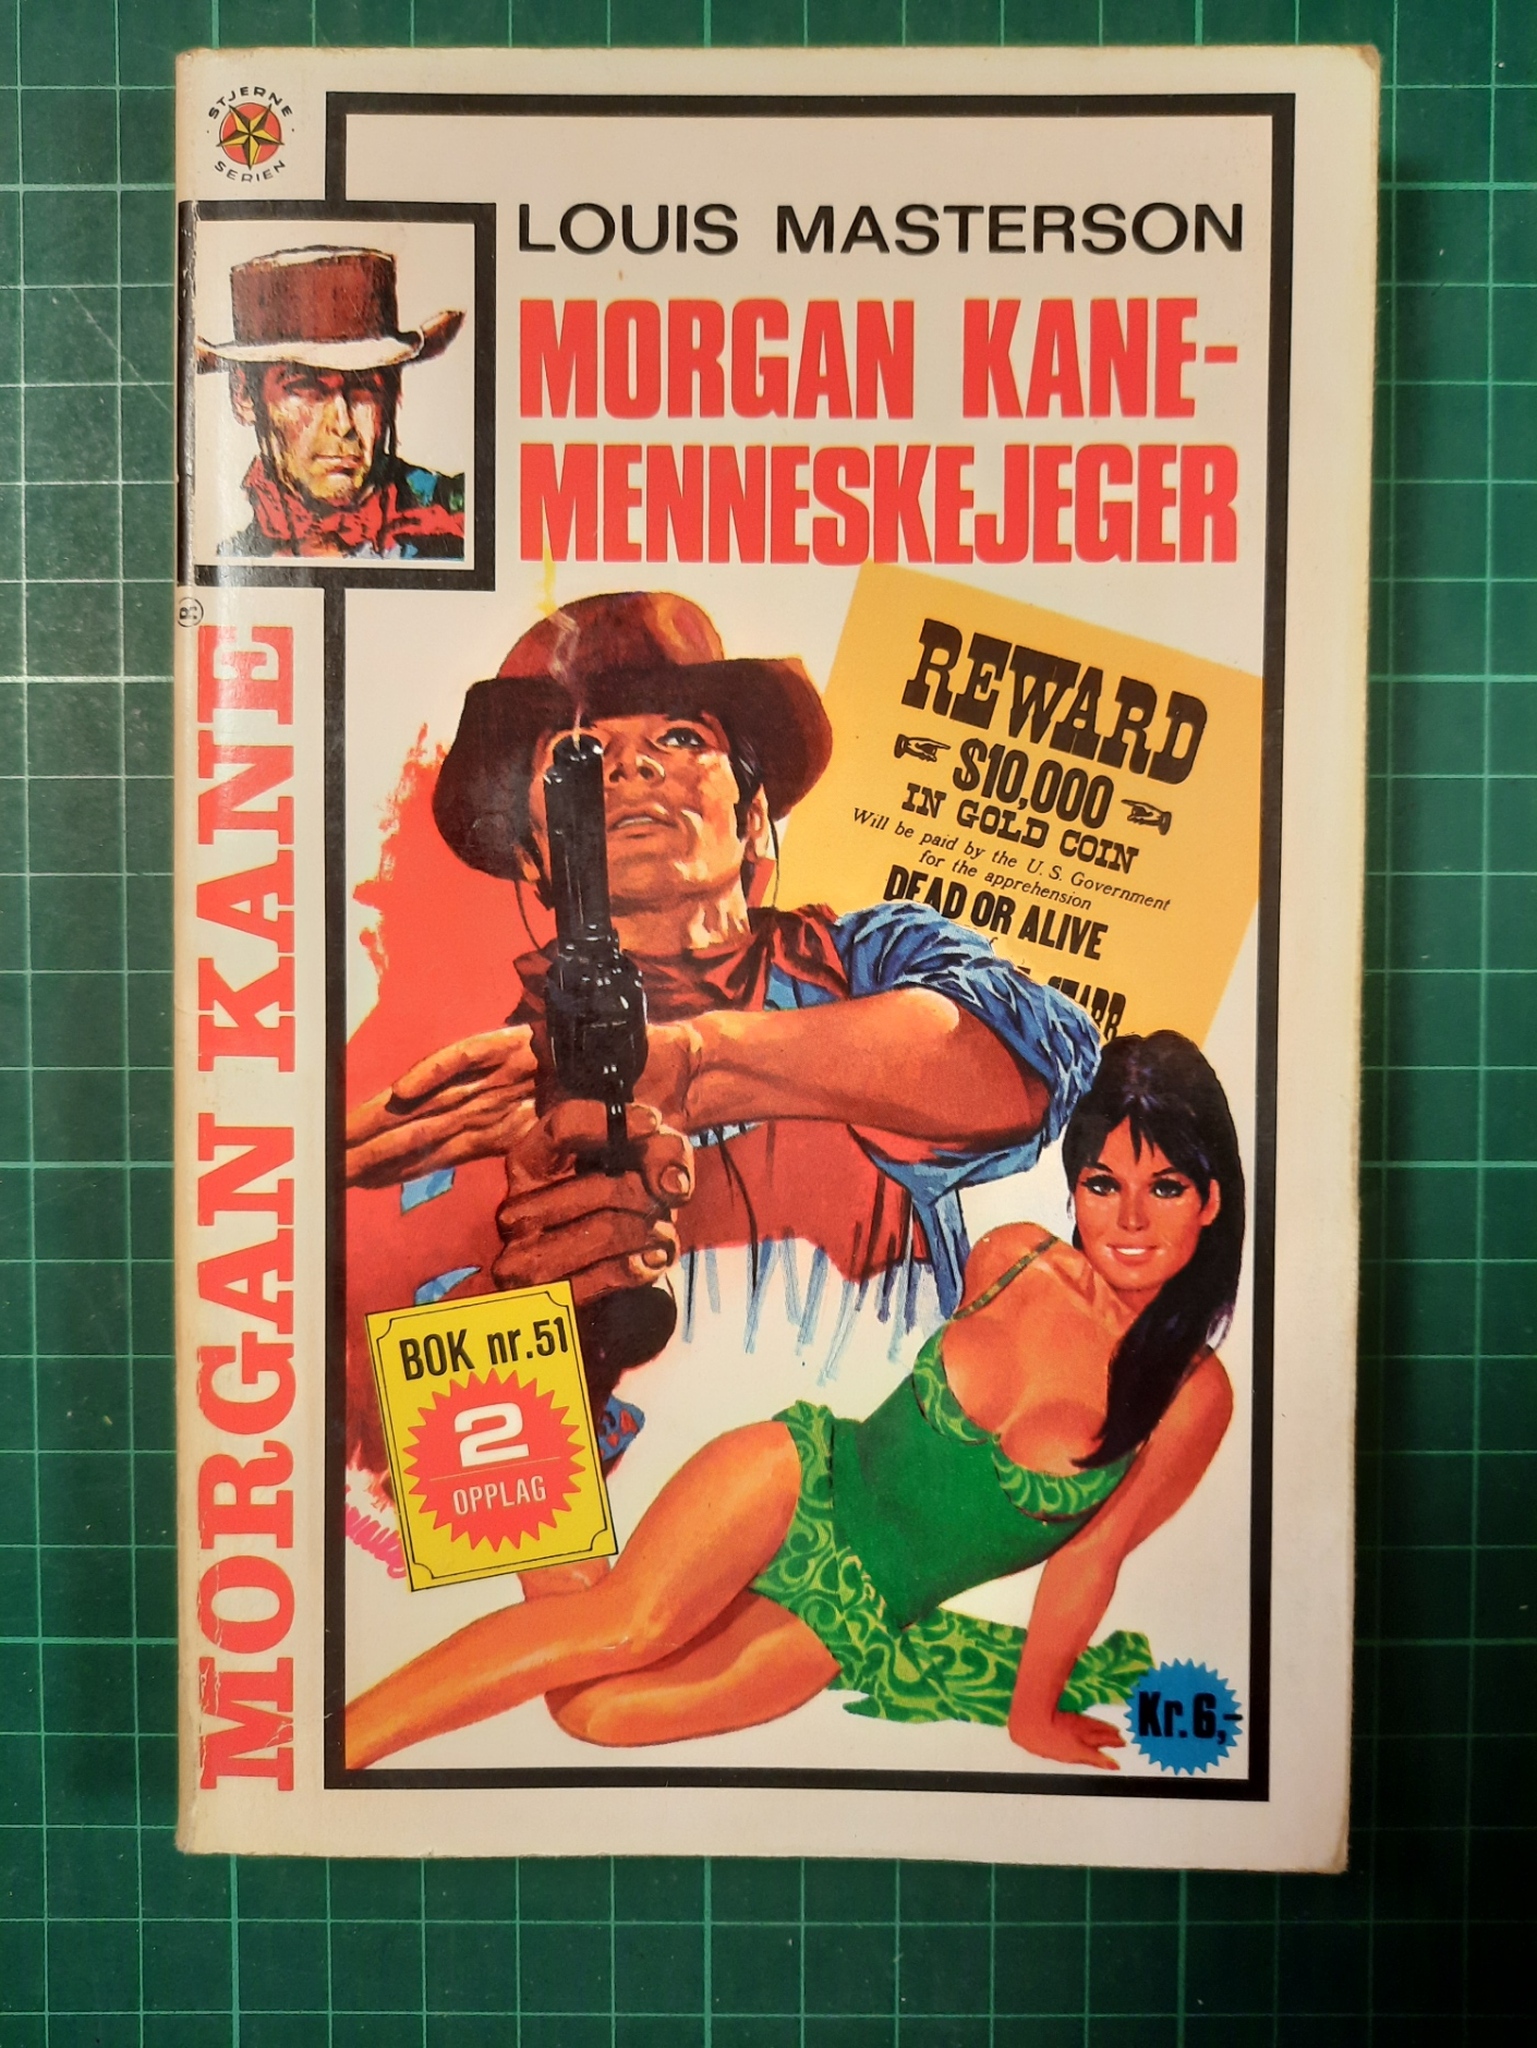 Morgan Kane pocket 51 Morgan Kane – menneskejeger